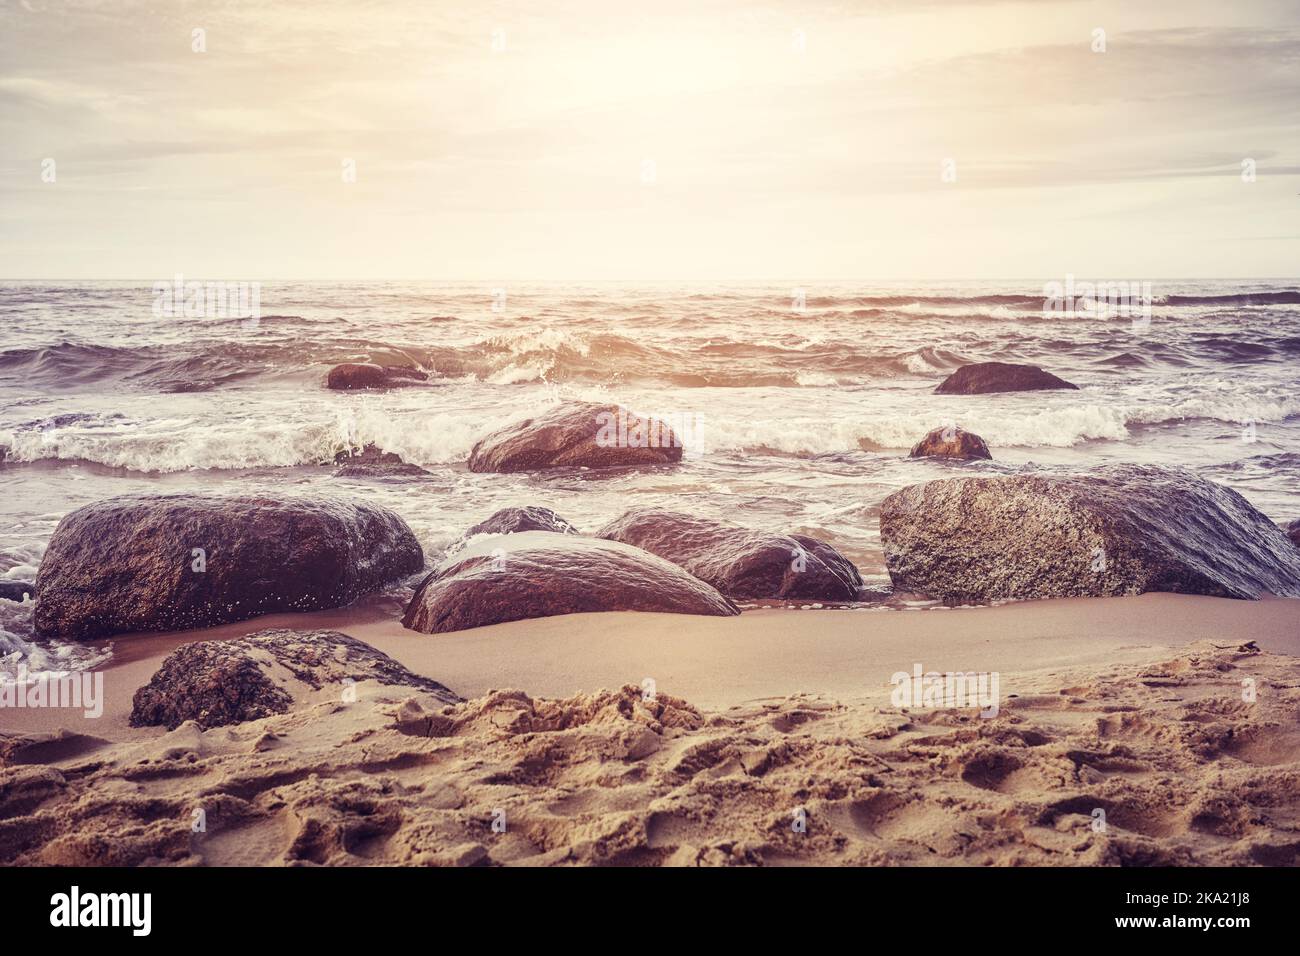 Rochers sur une plage de sable, teintes rétro appliquées. Banque D'Images